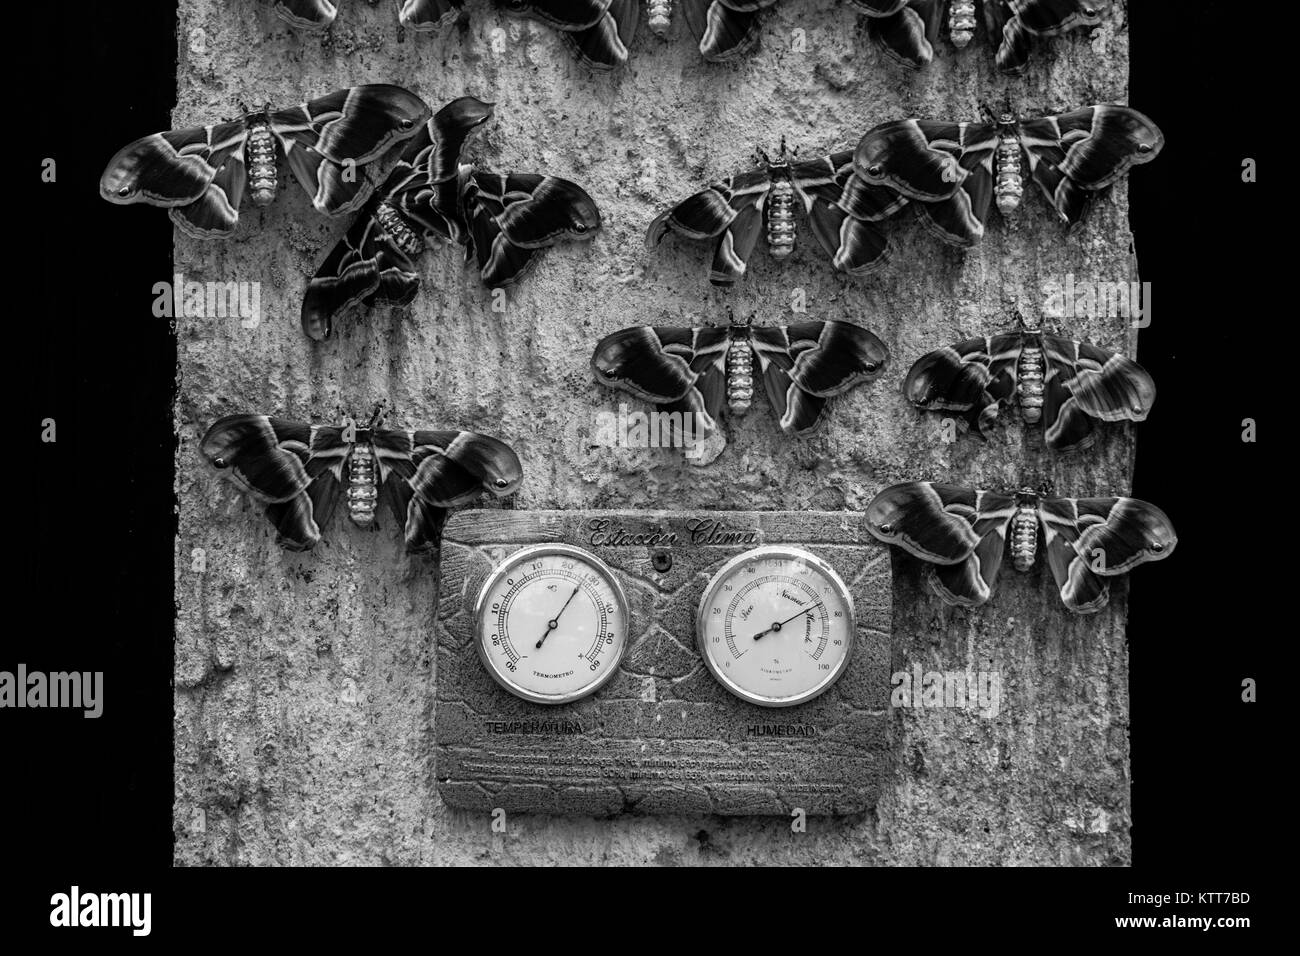 Une collection de papillons accroché sur un mur autour d'un cadran climatique en noir et blanc Banque D'Images